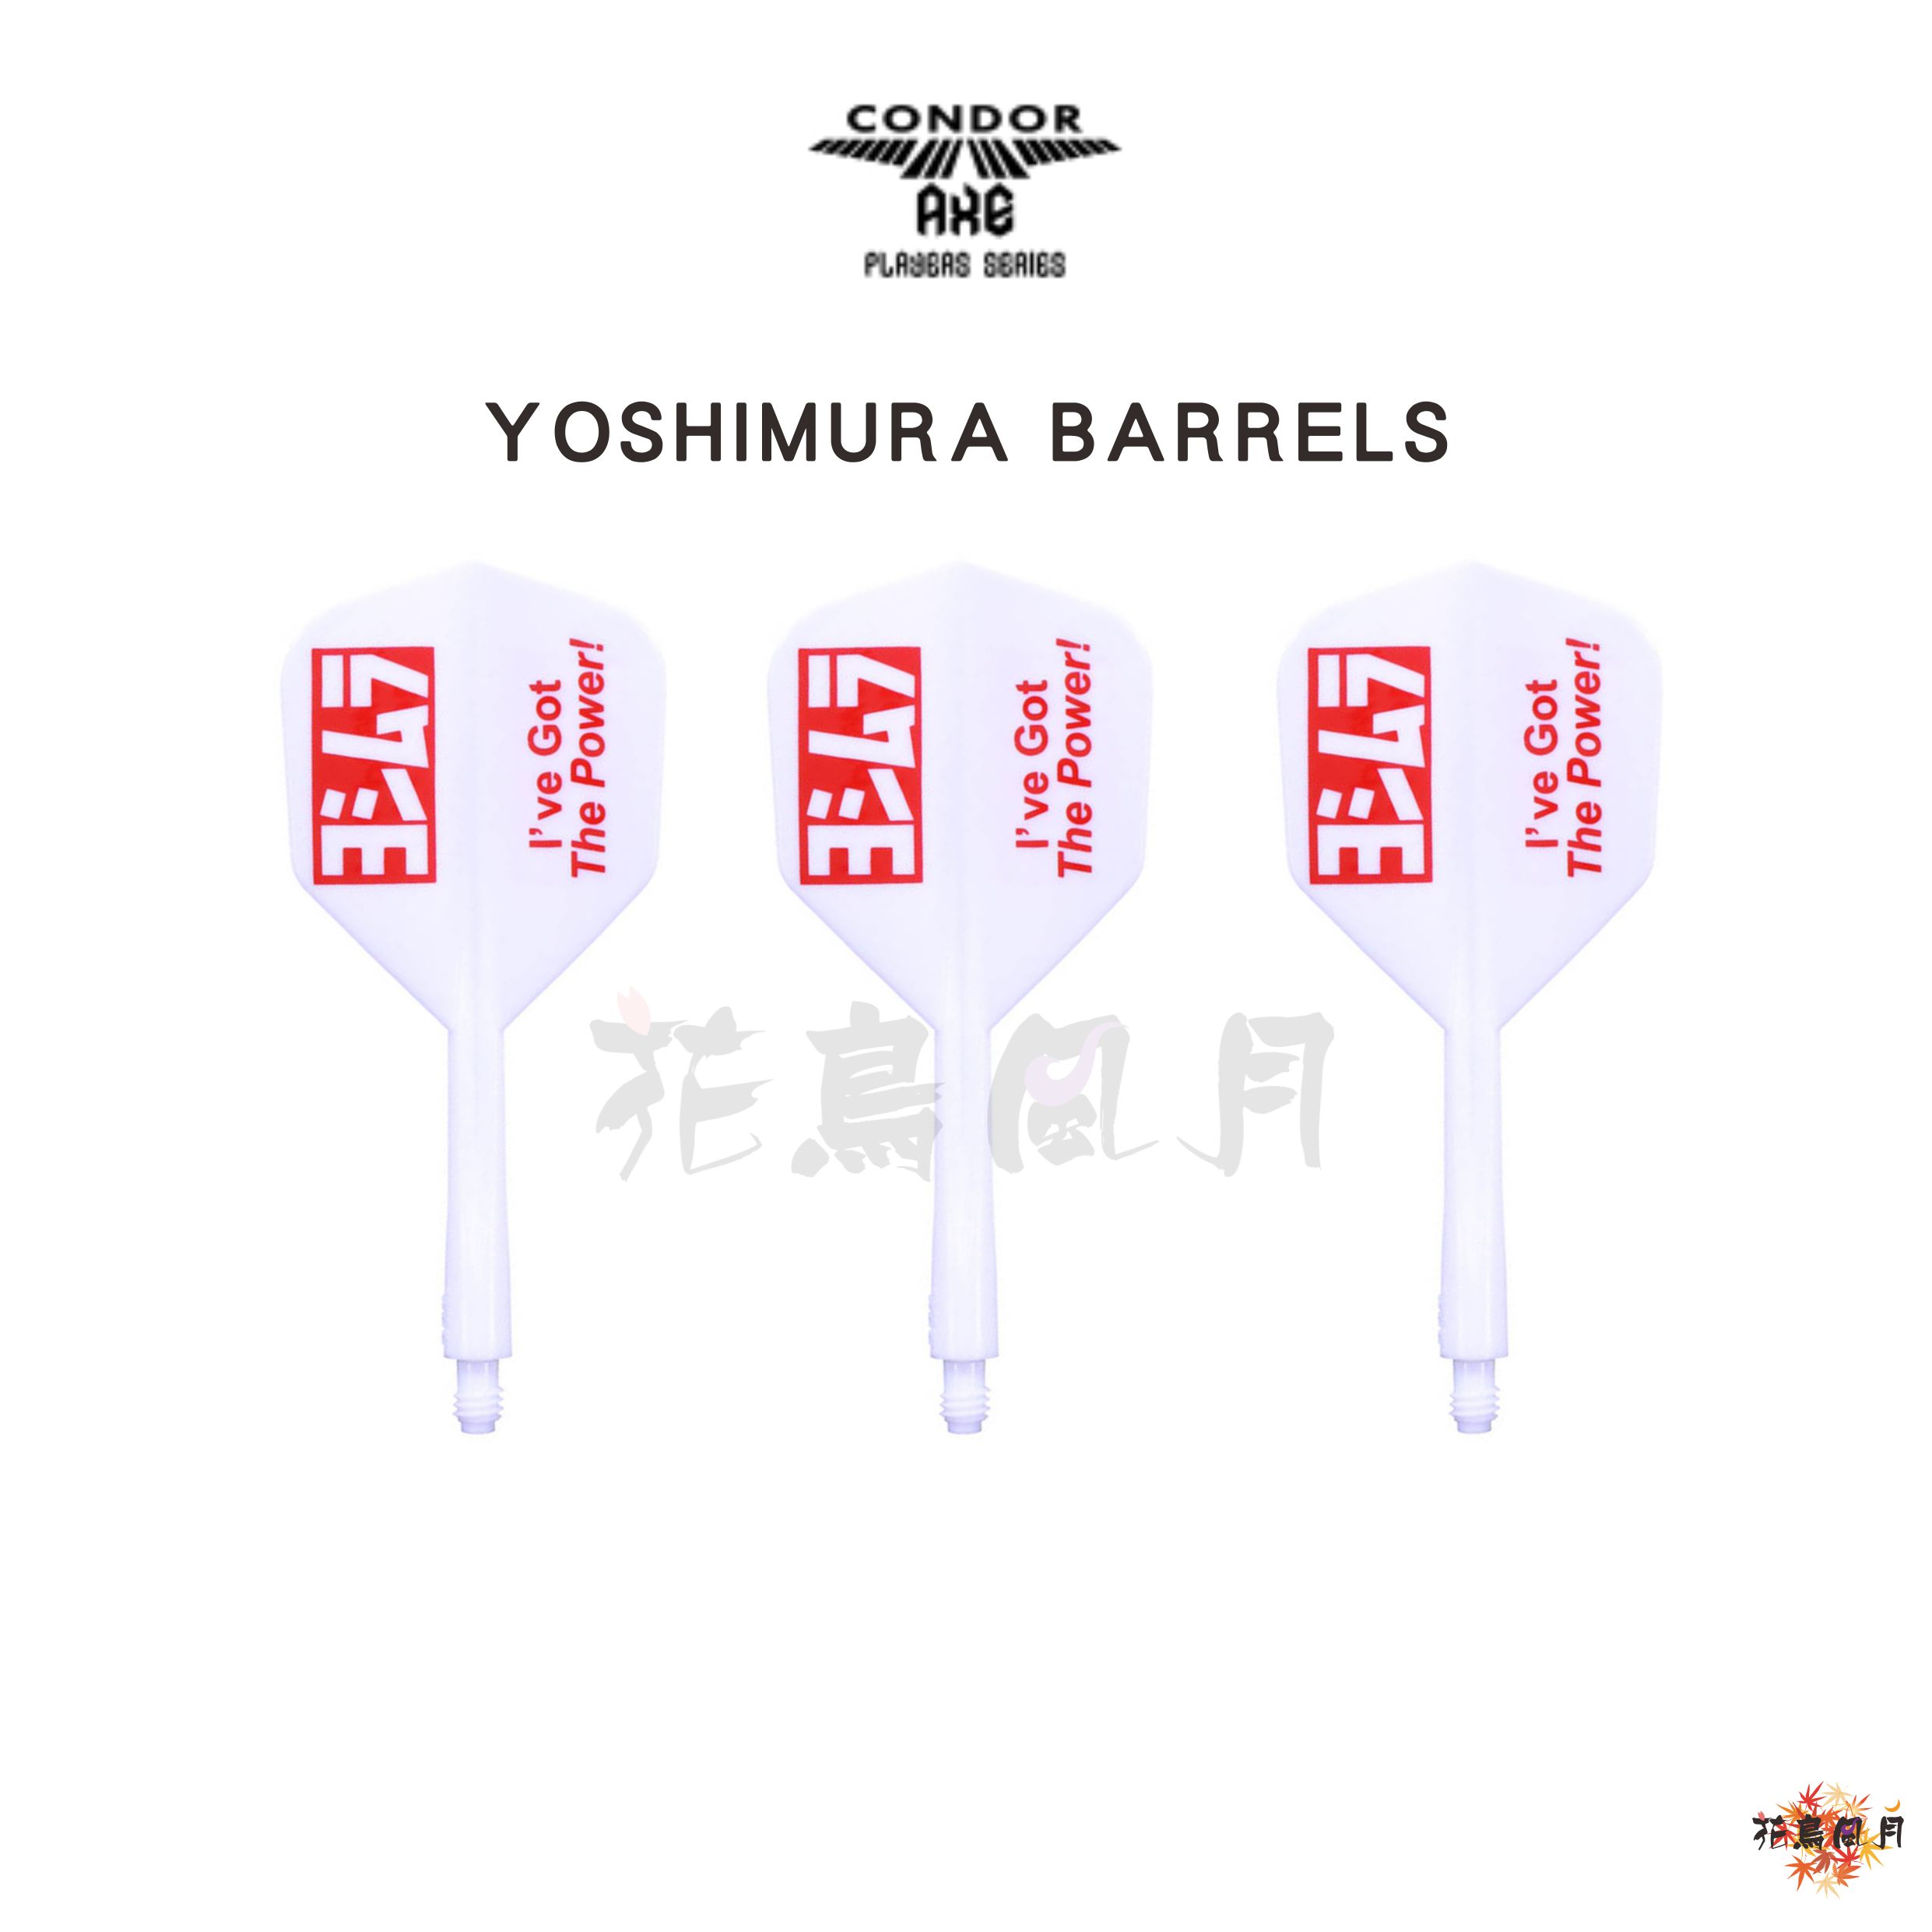 YOSHIMURA-BARRELSヨシムラバレルズ-CONDOR-AXEコンドルアックス-ファクトリー-スモール-ホワ.jpg